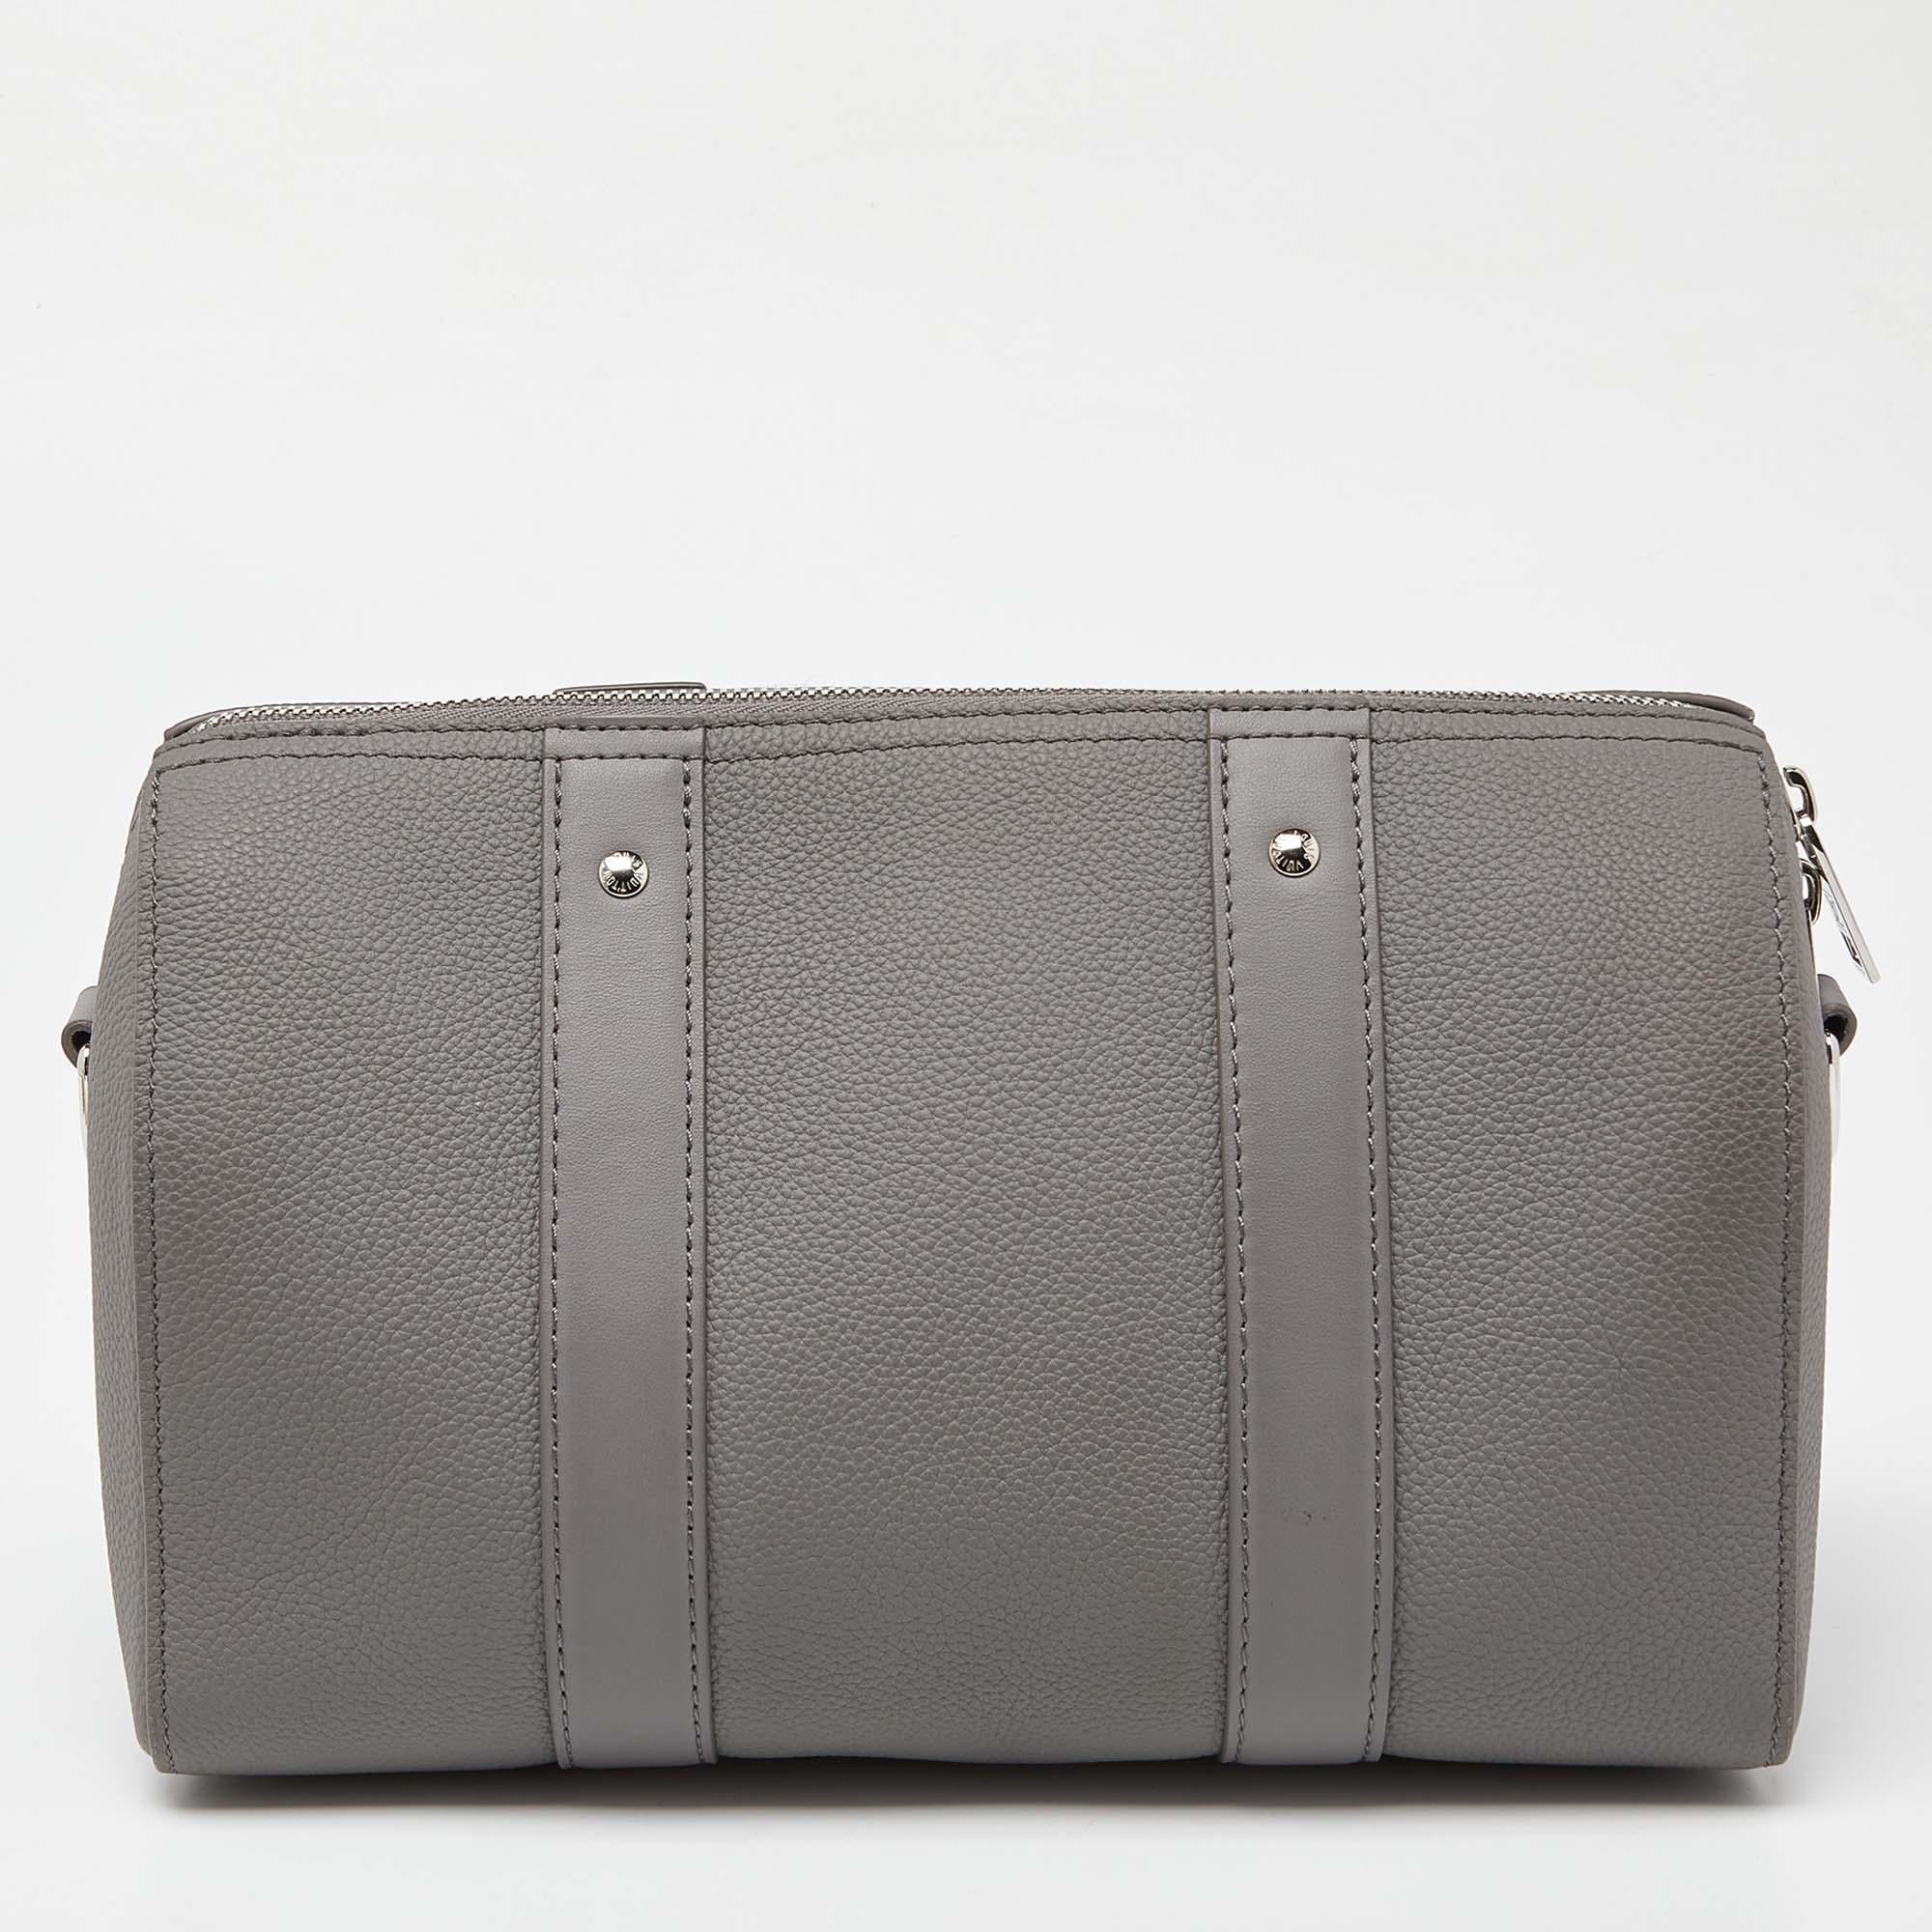 Transportez tout ce dont vous avez besoin avec style grâce à ce sac Louis Vuitton City Keepall. Fabriqué à partir des meilleurs matériaux, c'est un accessoire qui promet un style et une utilisation durables.

Comprend : Sac à poussière d'origine,